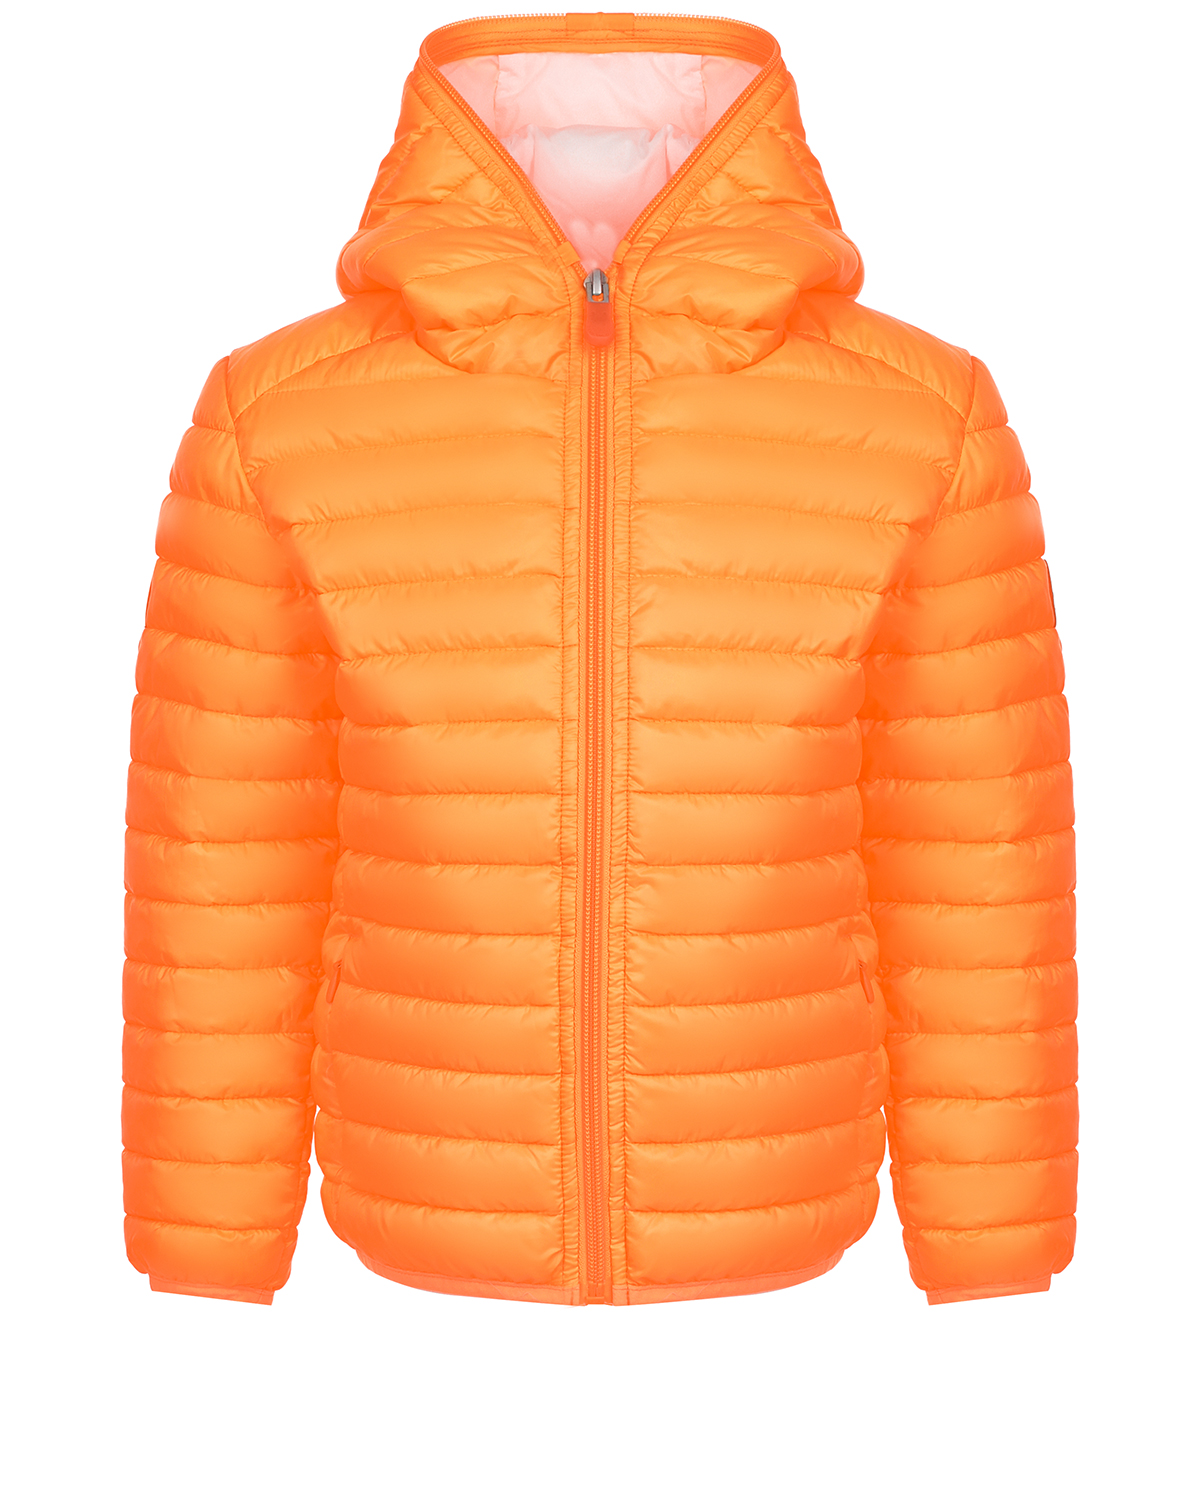 Оранжевая нейлоновая куртка Save the Duck, размер 140, цвет оранжевый - фото 1